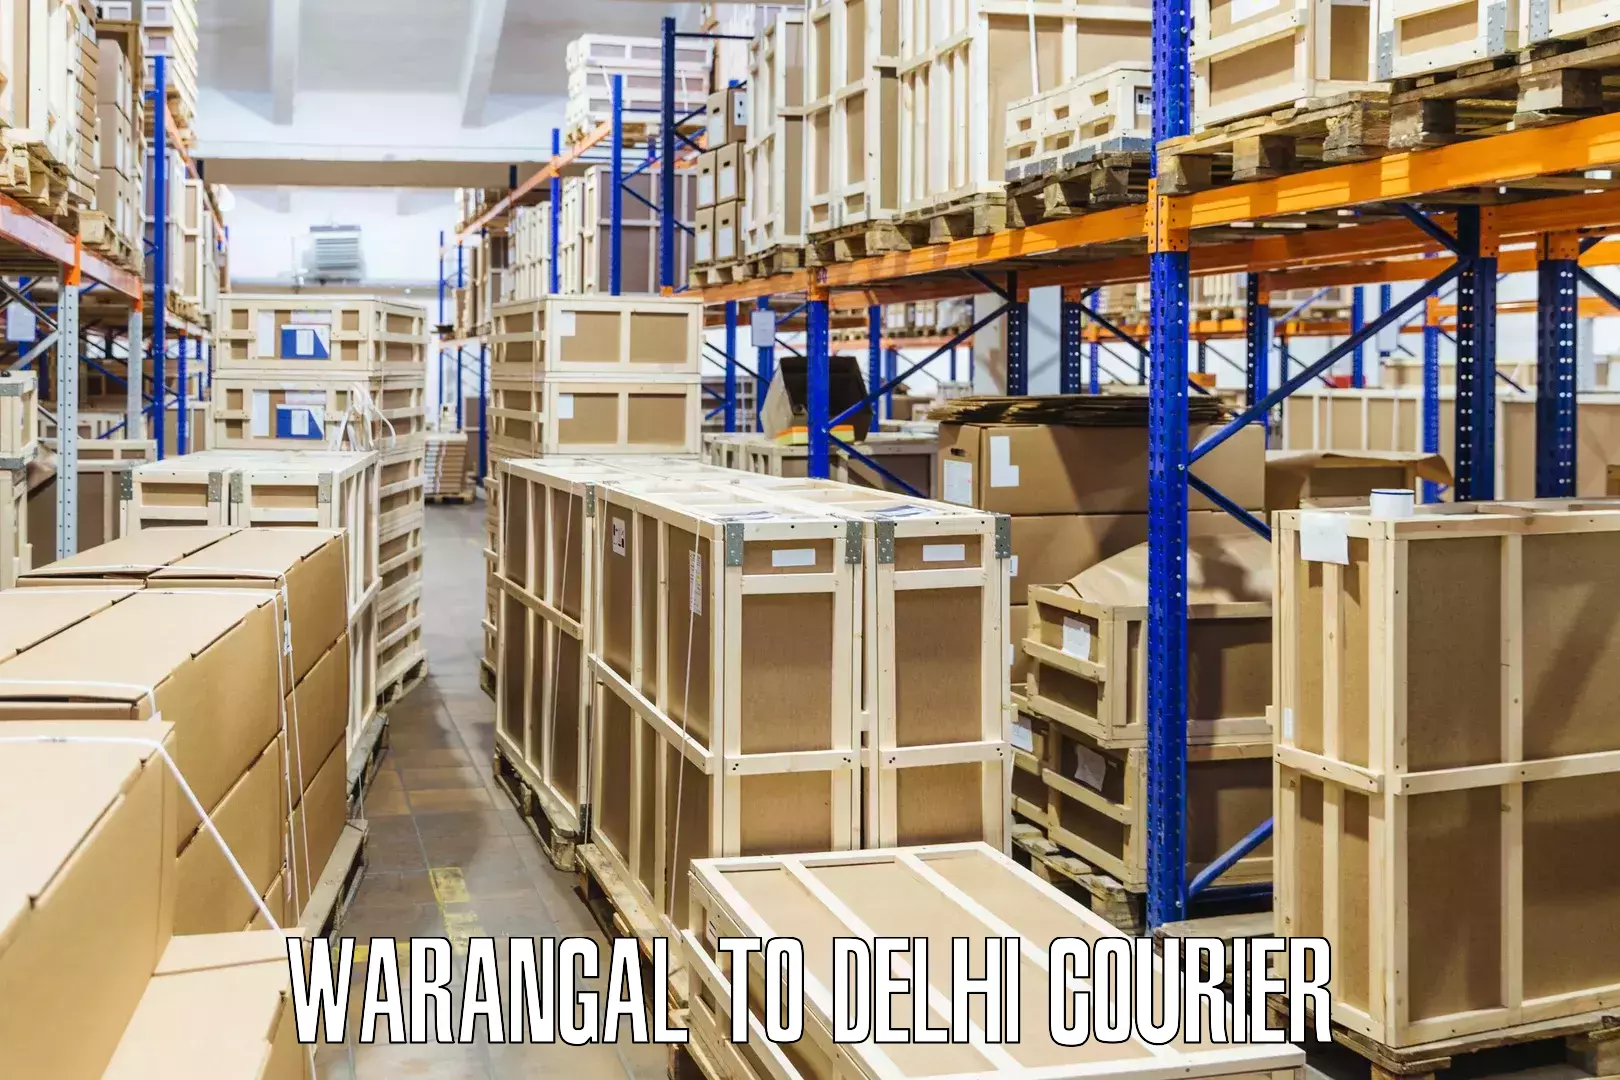 Professional parcel services Warangal to Jamia Millia Islamia New Delhi